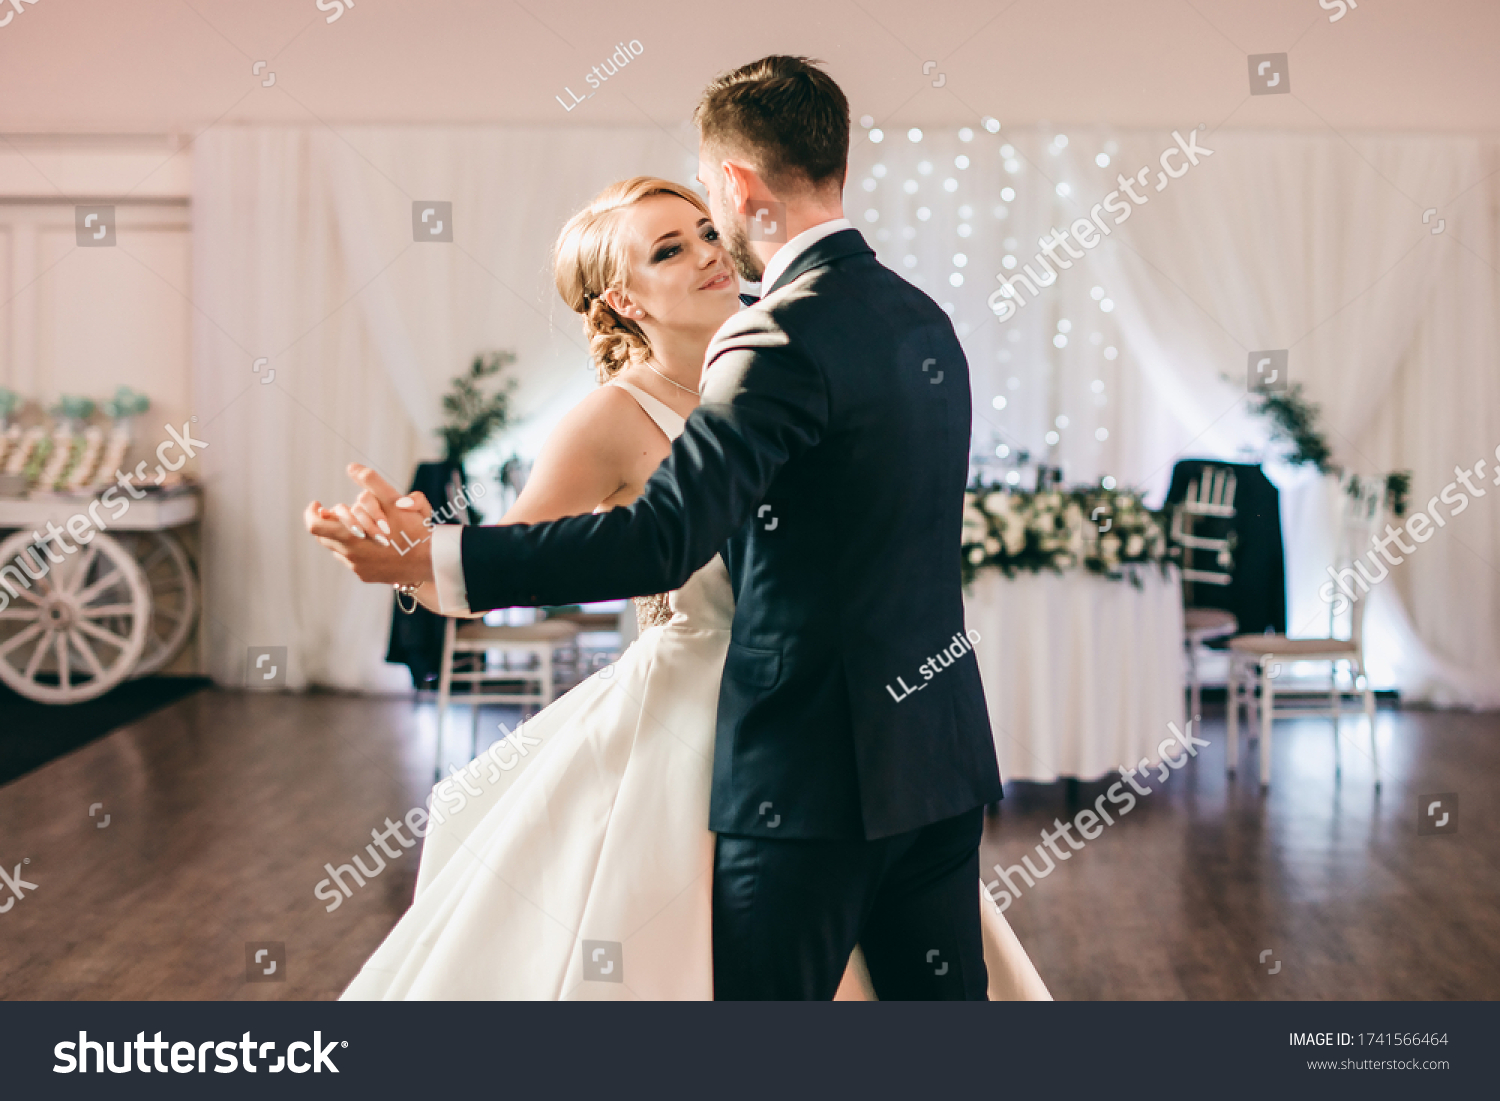 Танец молодоженов на свадьбе